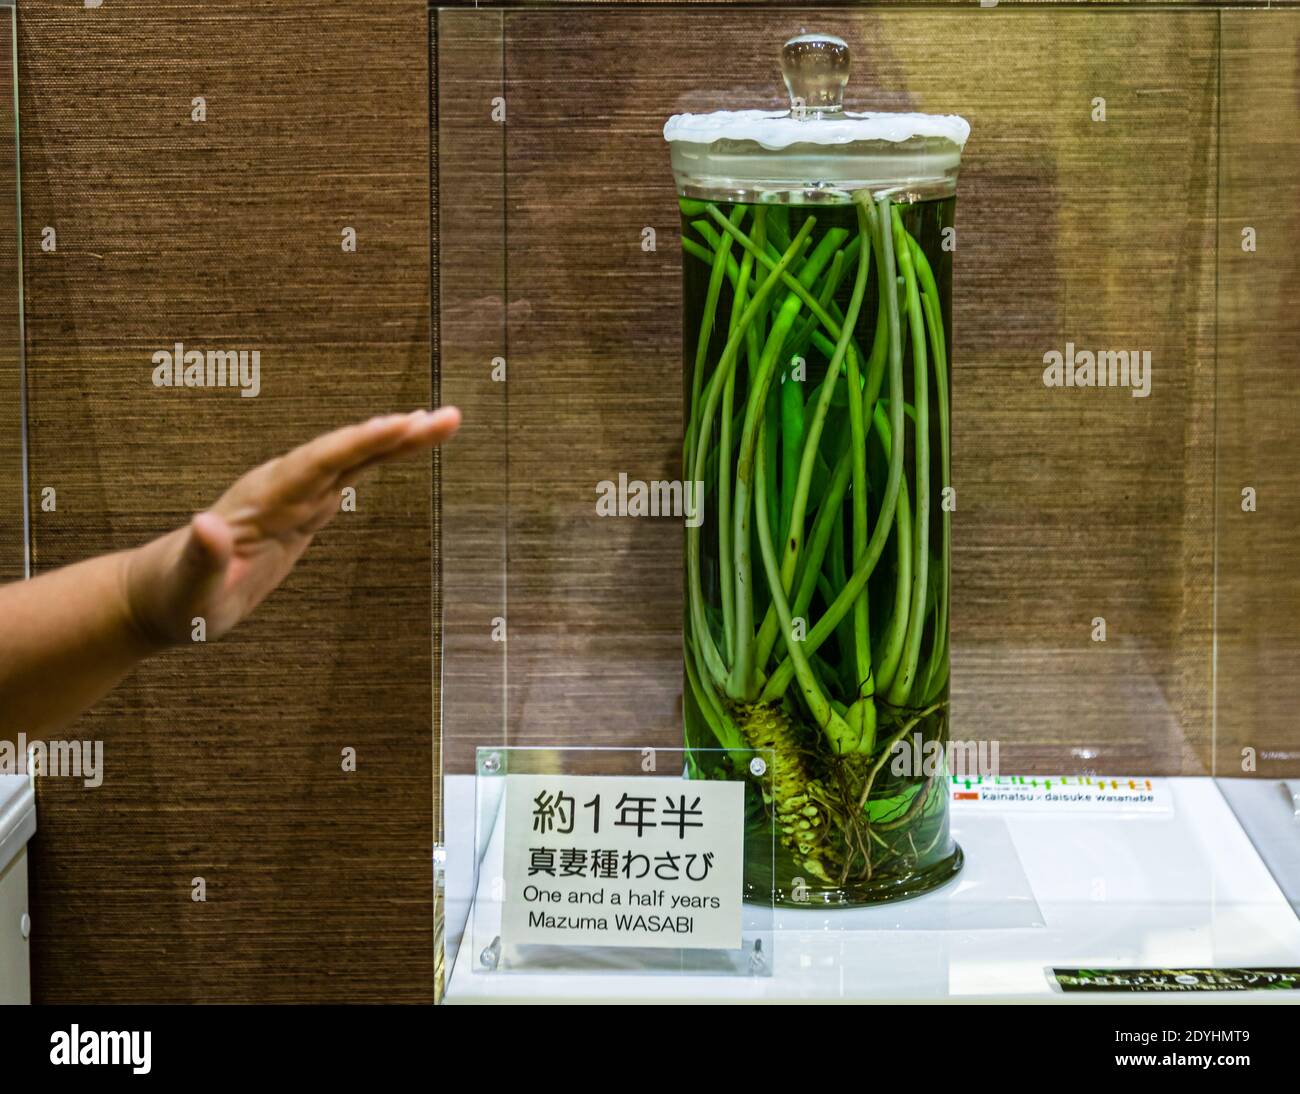 Museo Wasabi a Kannami, Giappone. Un impianto di wasabi di 1,5 anni è in mostra presso il Museo di Wasabi sulla penisola di Izu. La raccolta dei gel di wasabi richiede fino a tre anni Foto Stock